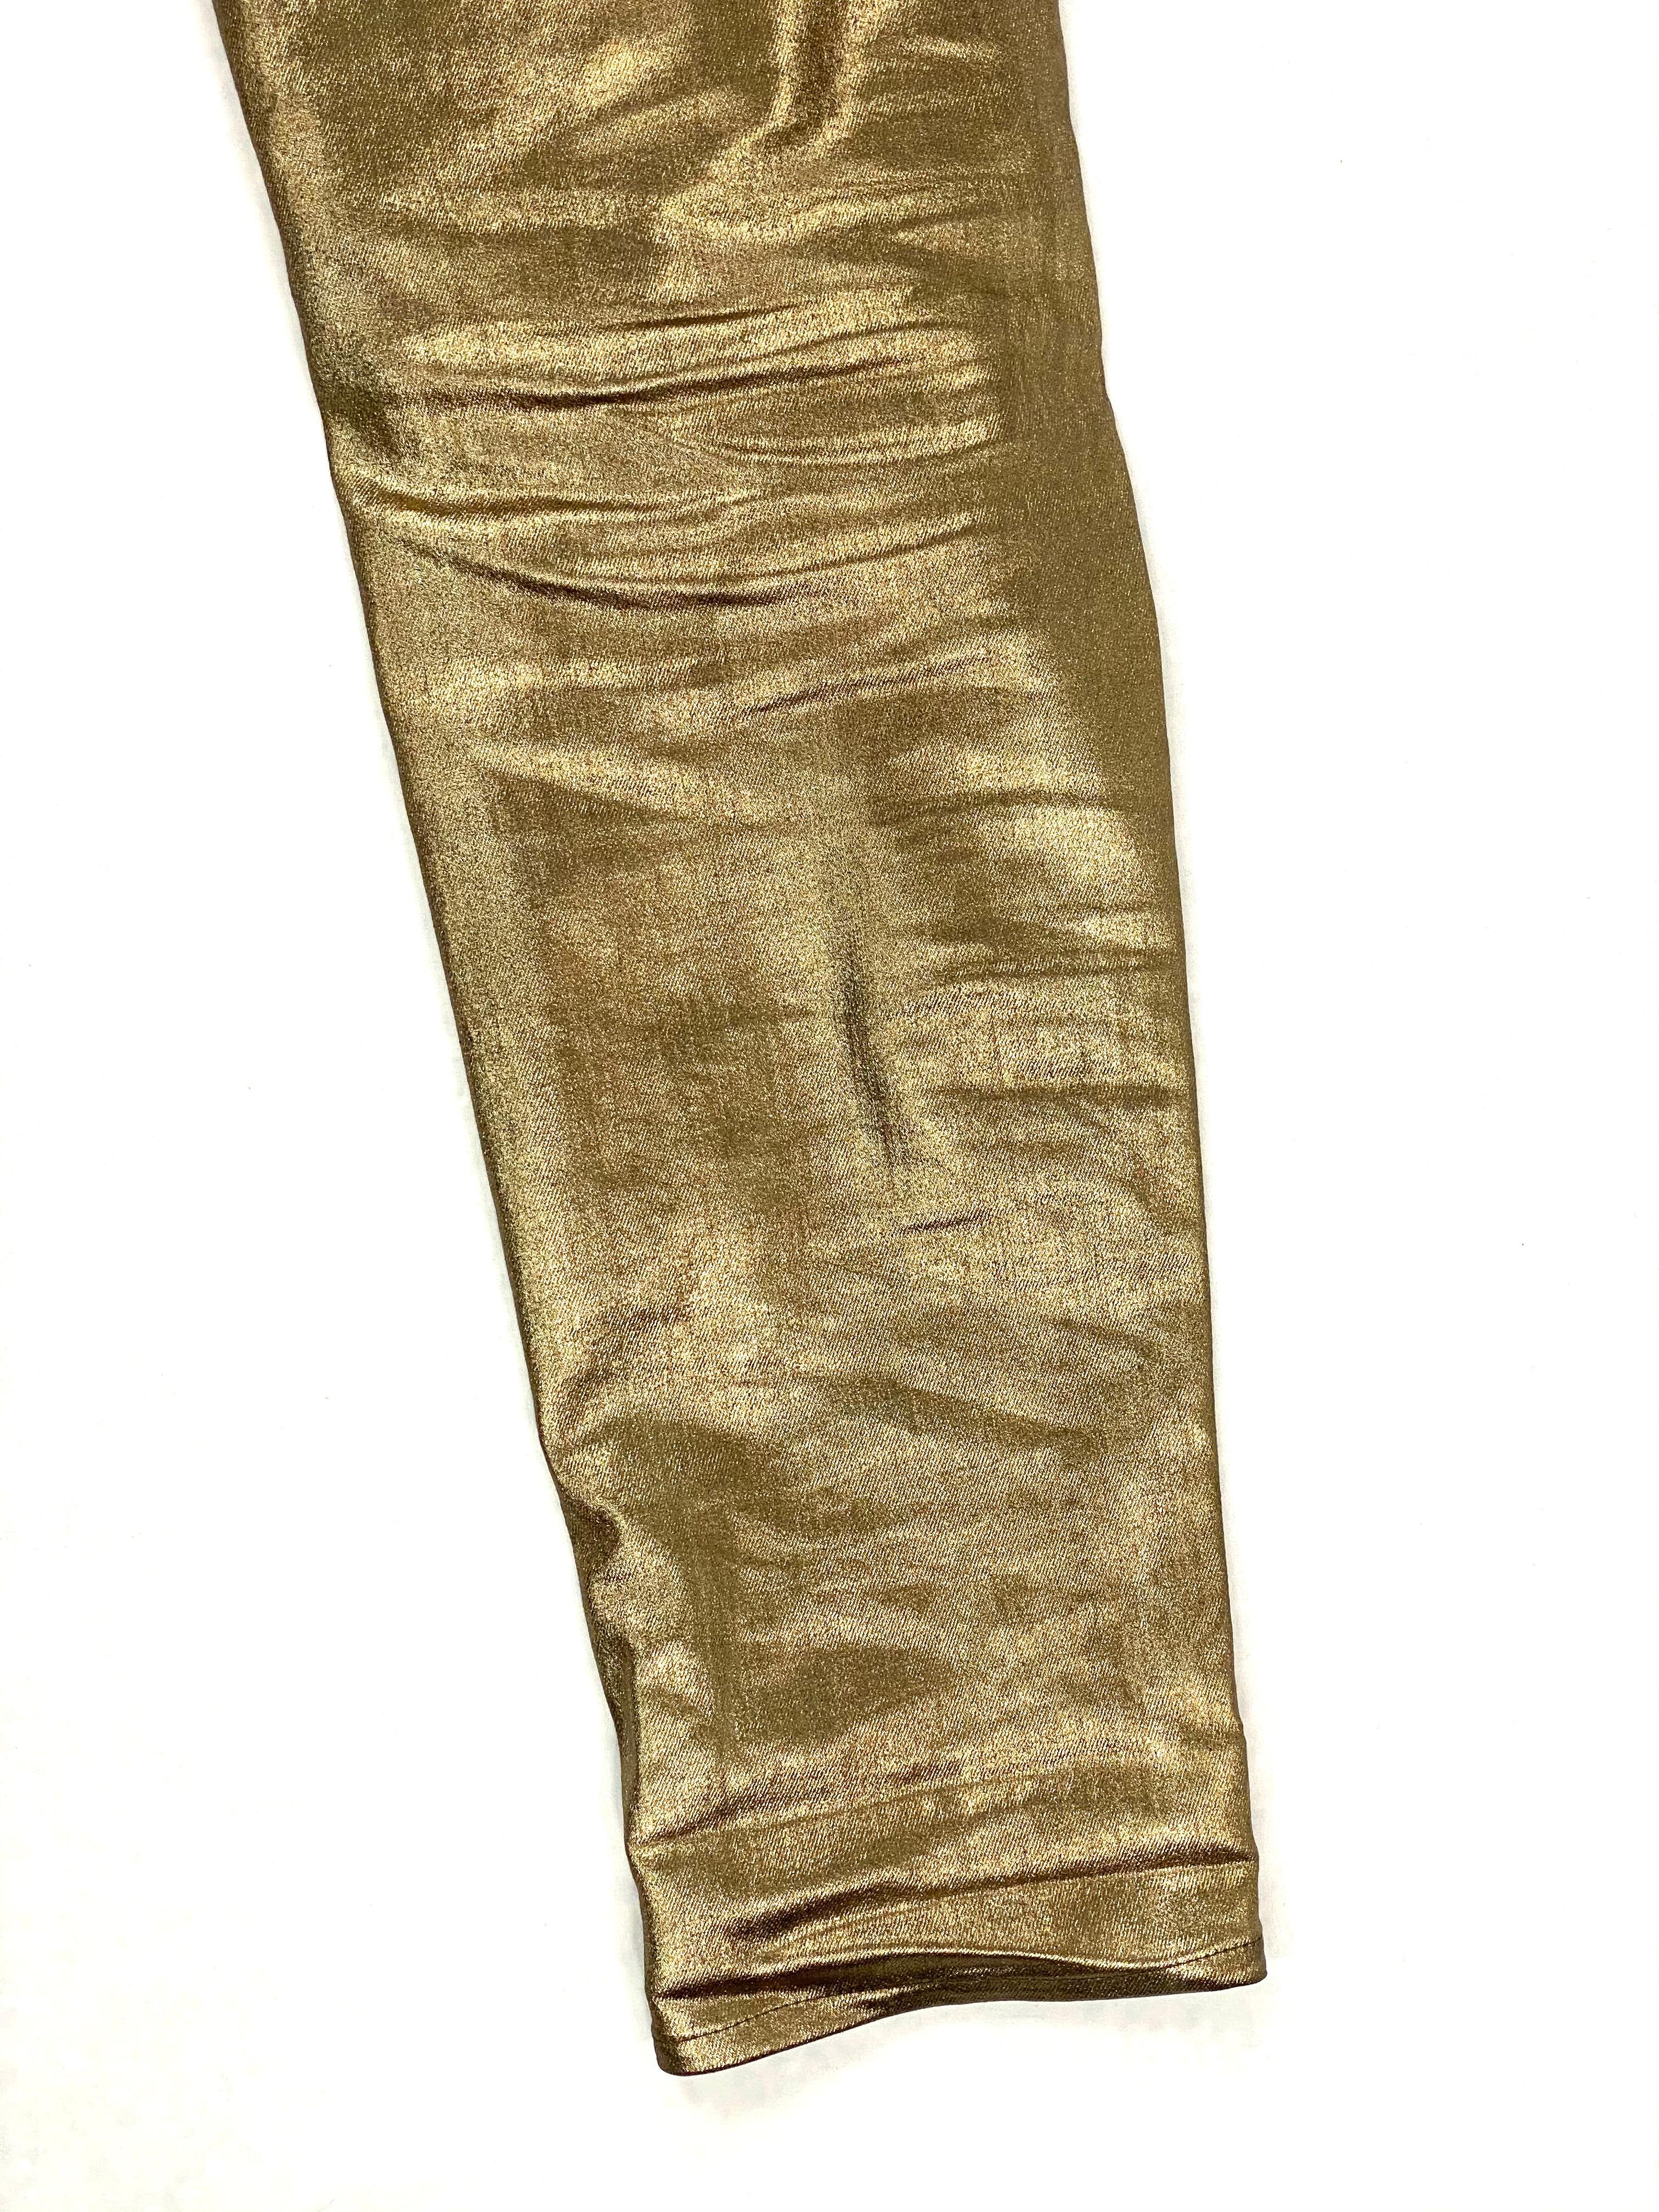 Ralph Lauren Gold Metallic Cotton Jeans Pants Size 28 For Sale 2